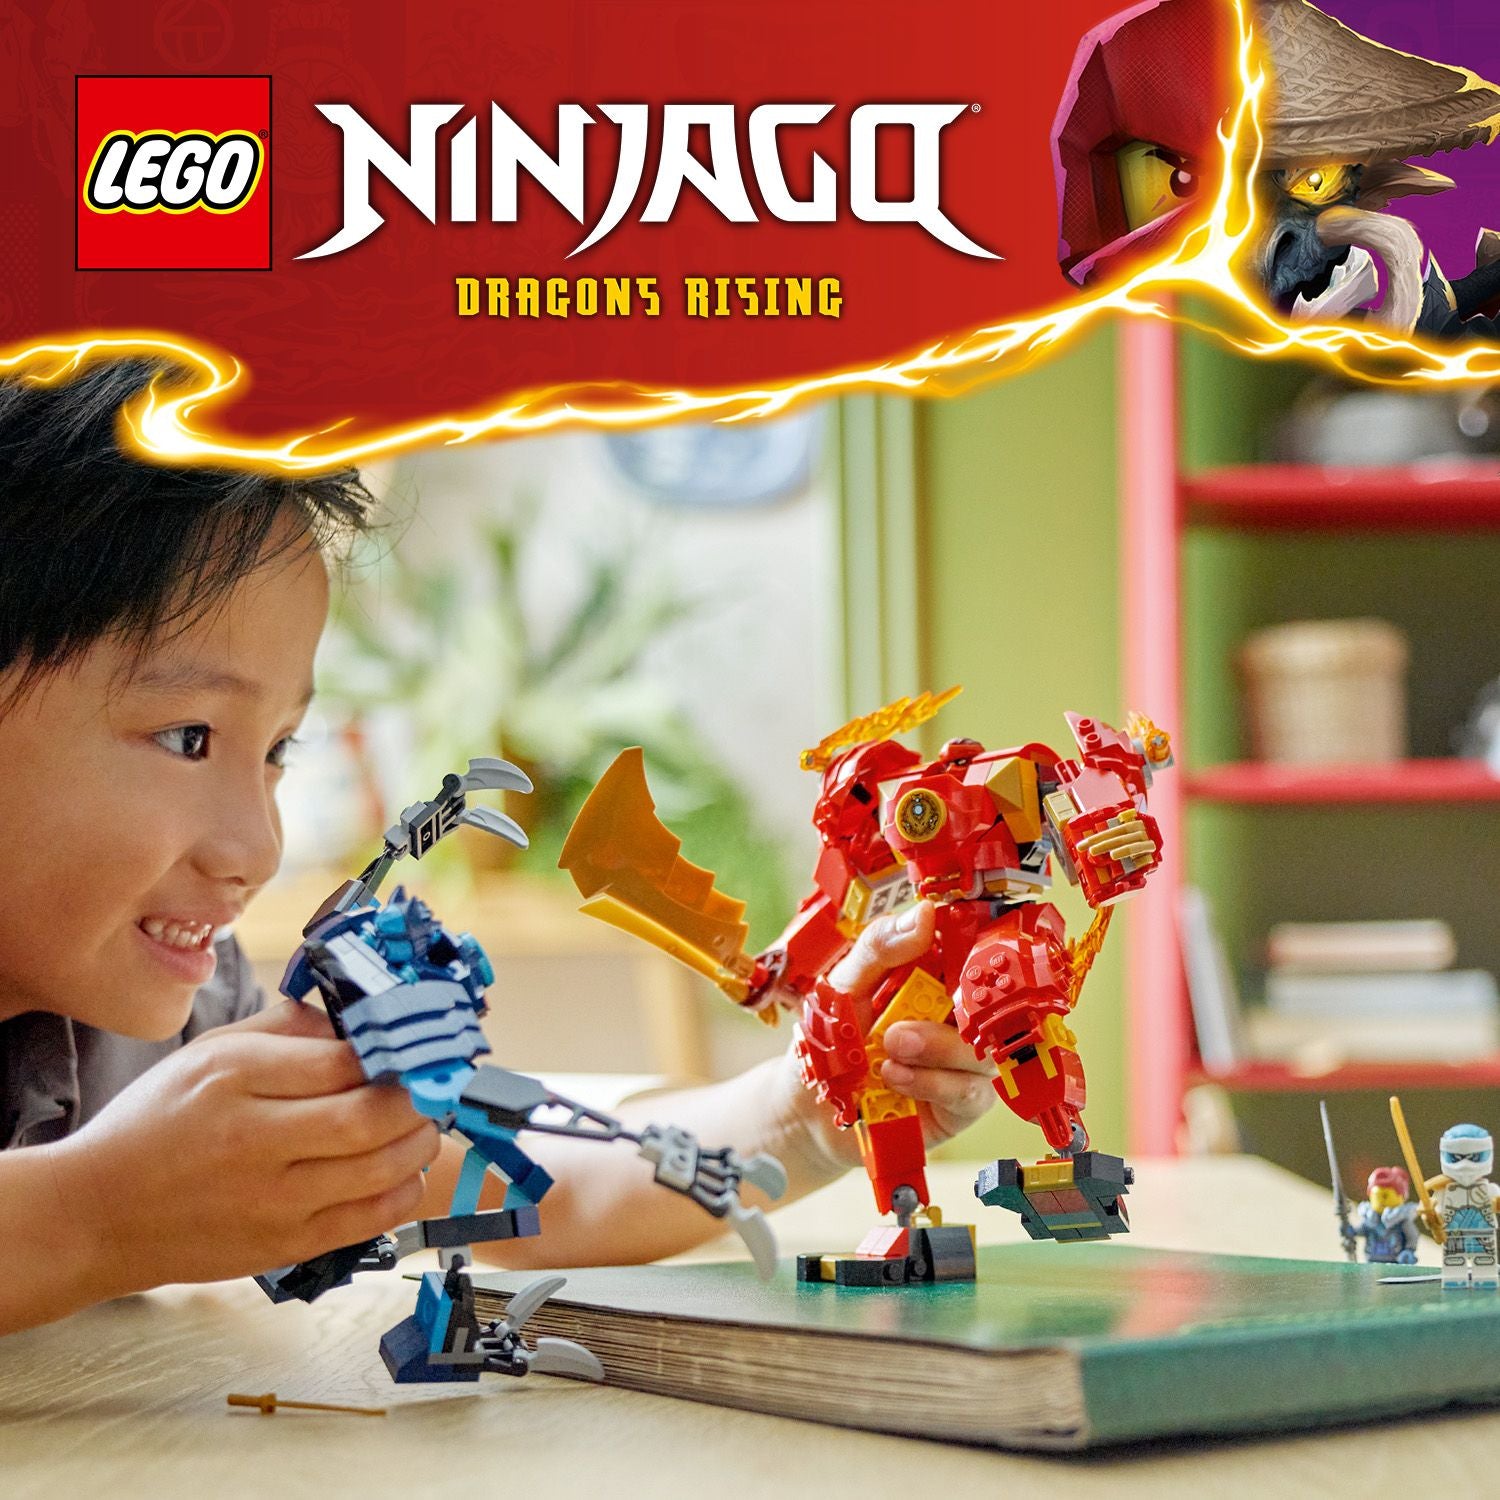 71808 LEGO Ninjago Mech elemento Fuoco di Kai